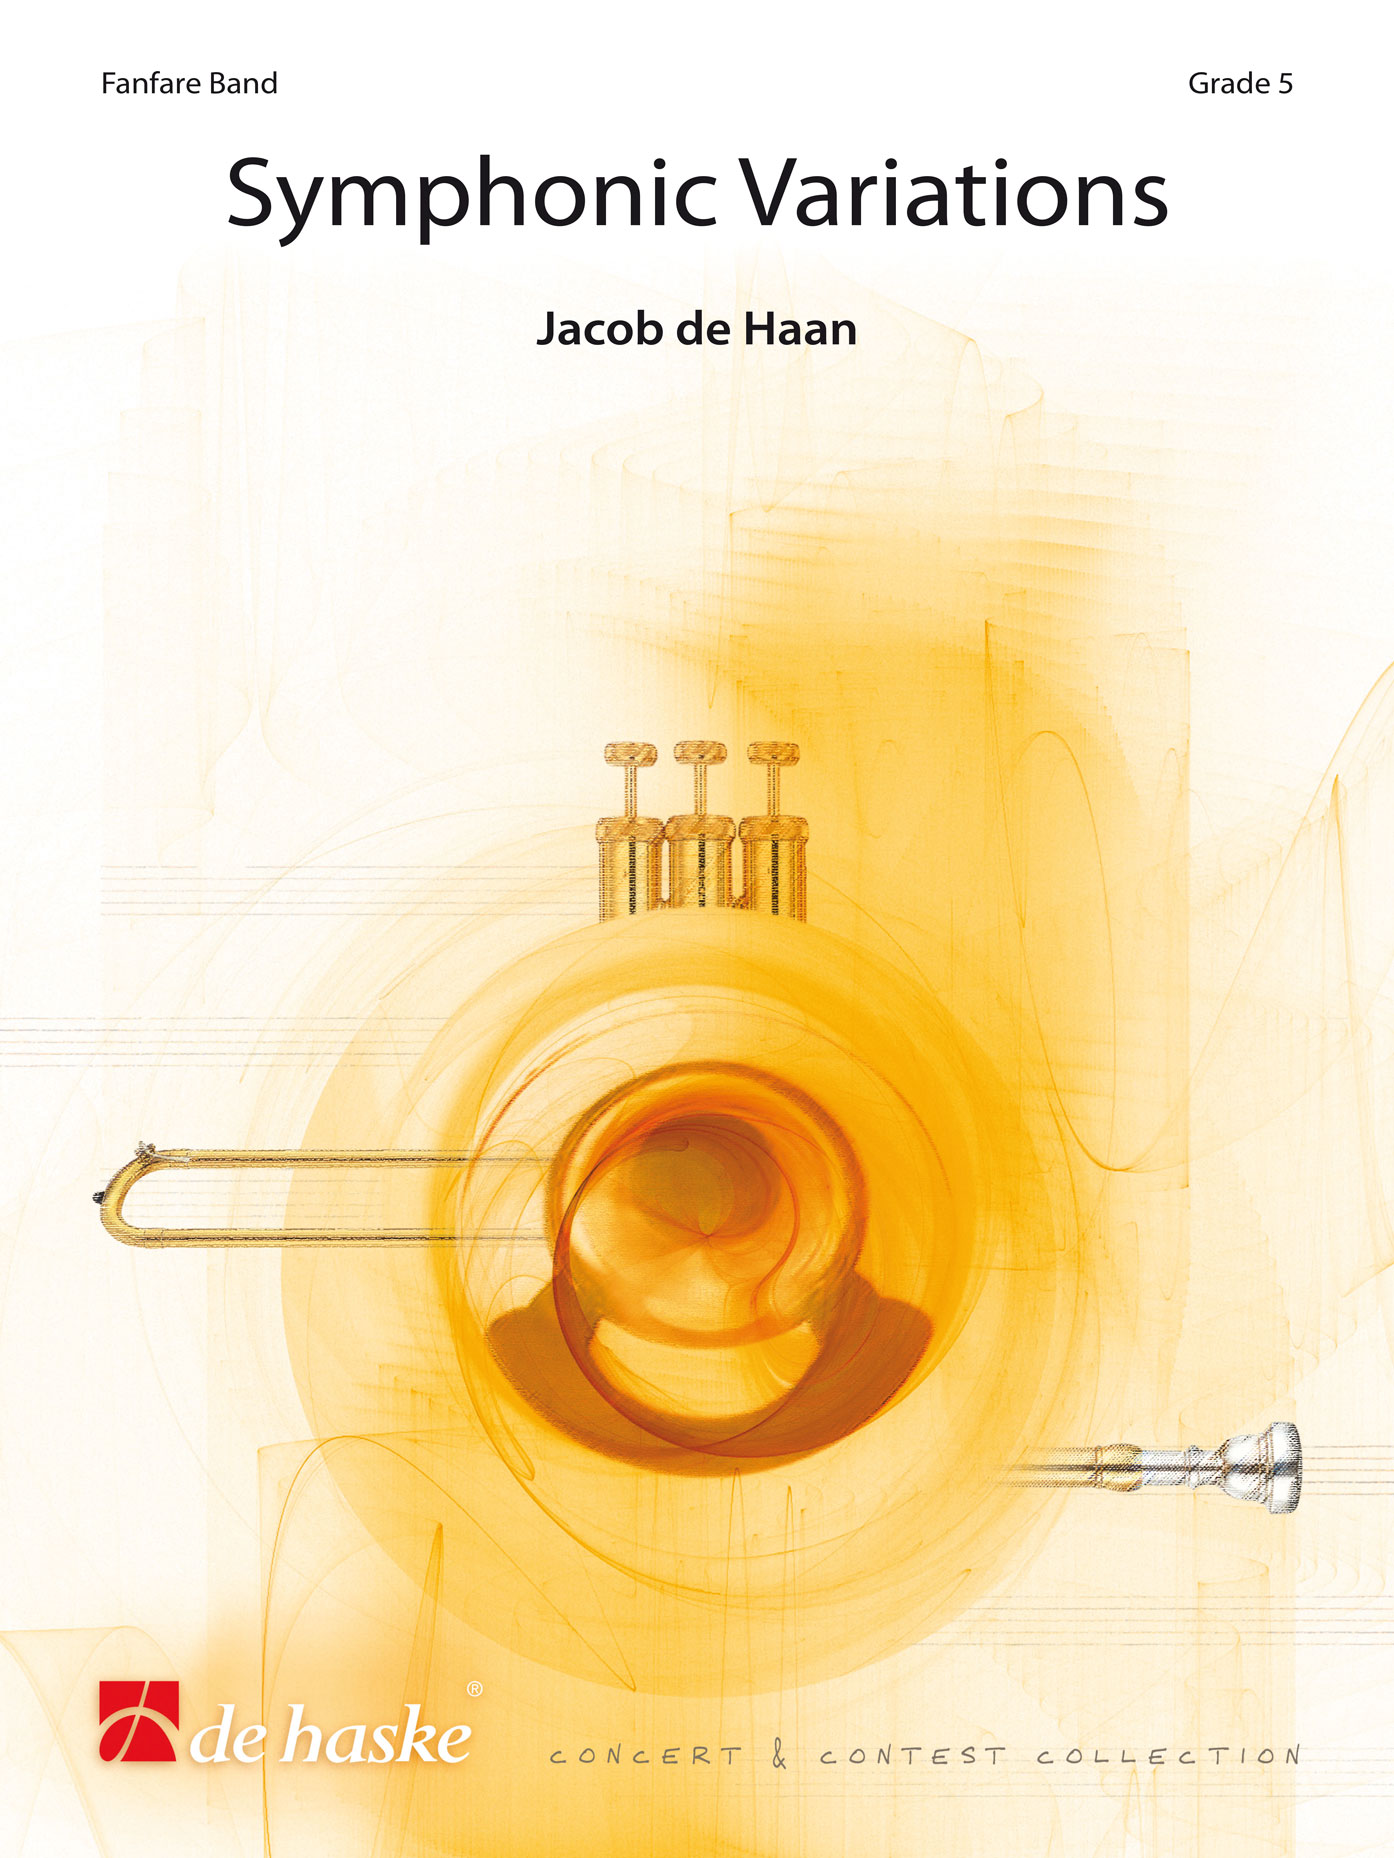 Jacob de Haan: Symphonic Variations: Fanfare Band: Score & Parts